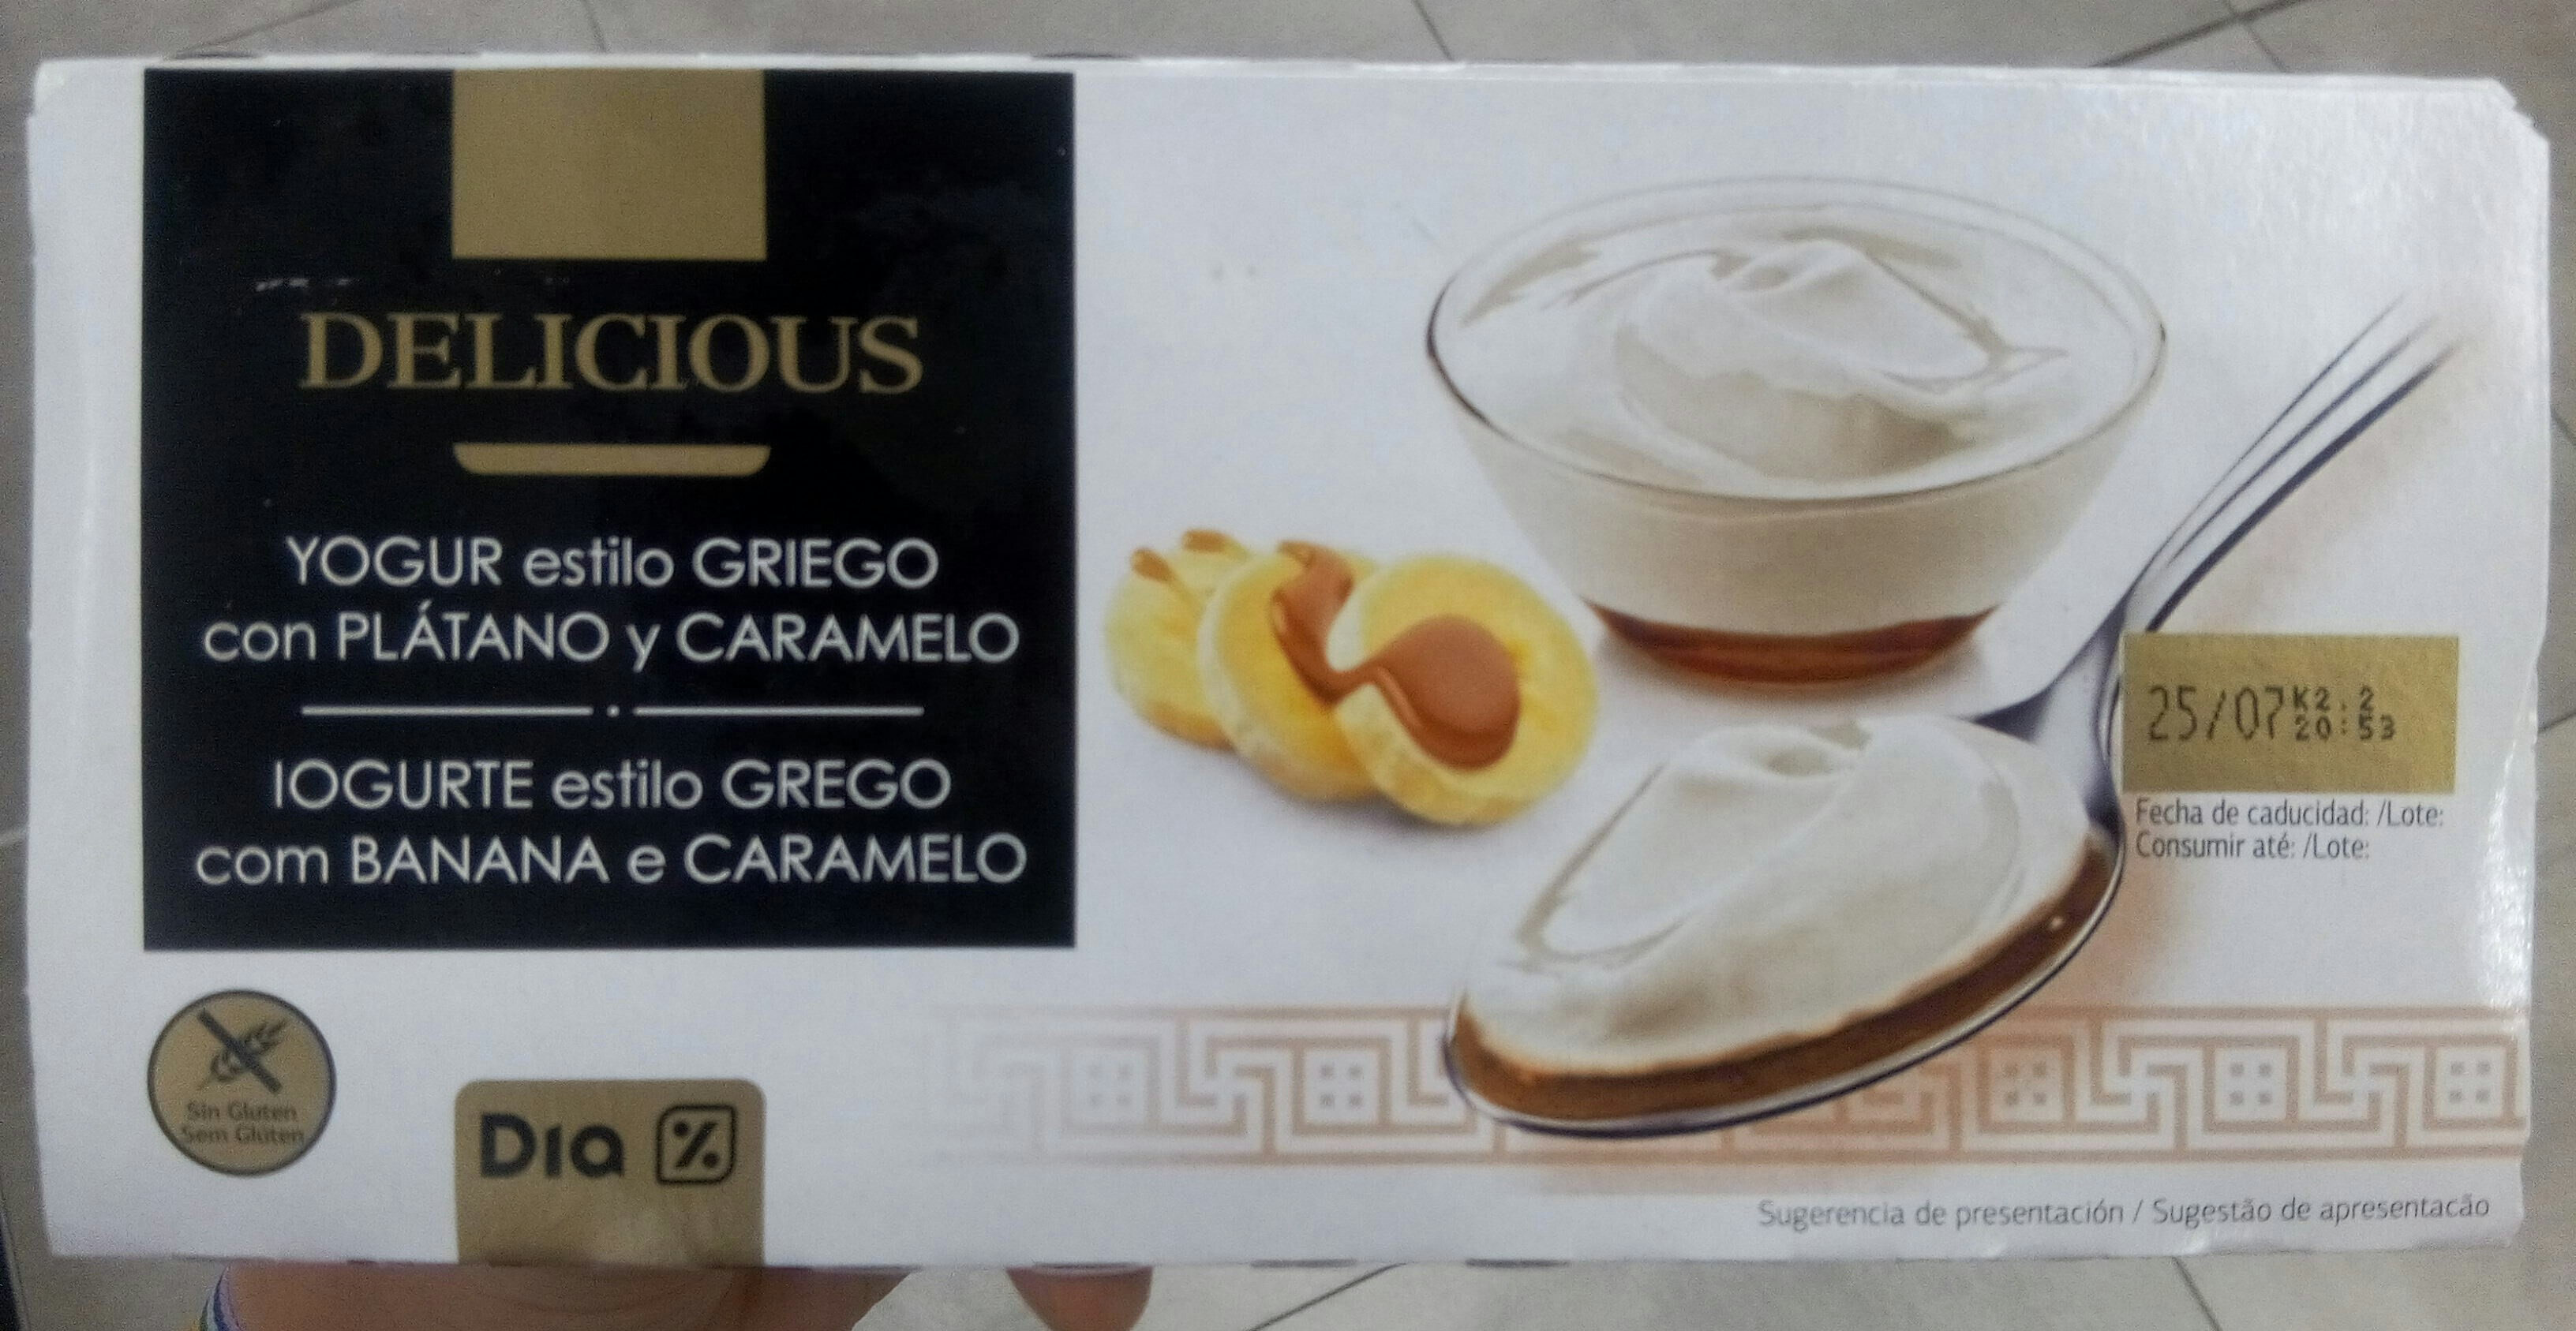 Delicious yogur estilo Griego con plátano y caramelo - Produit - es